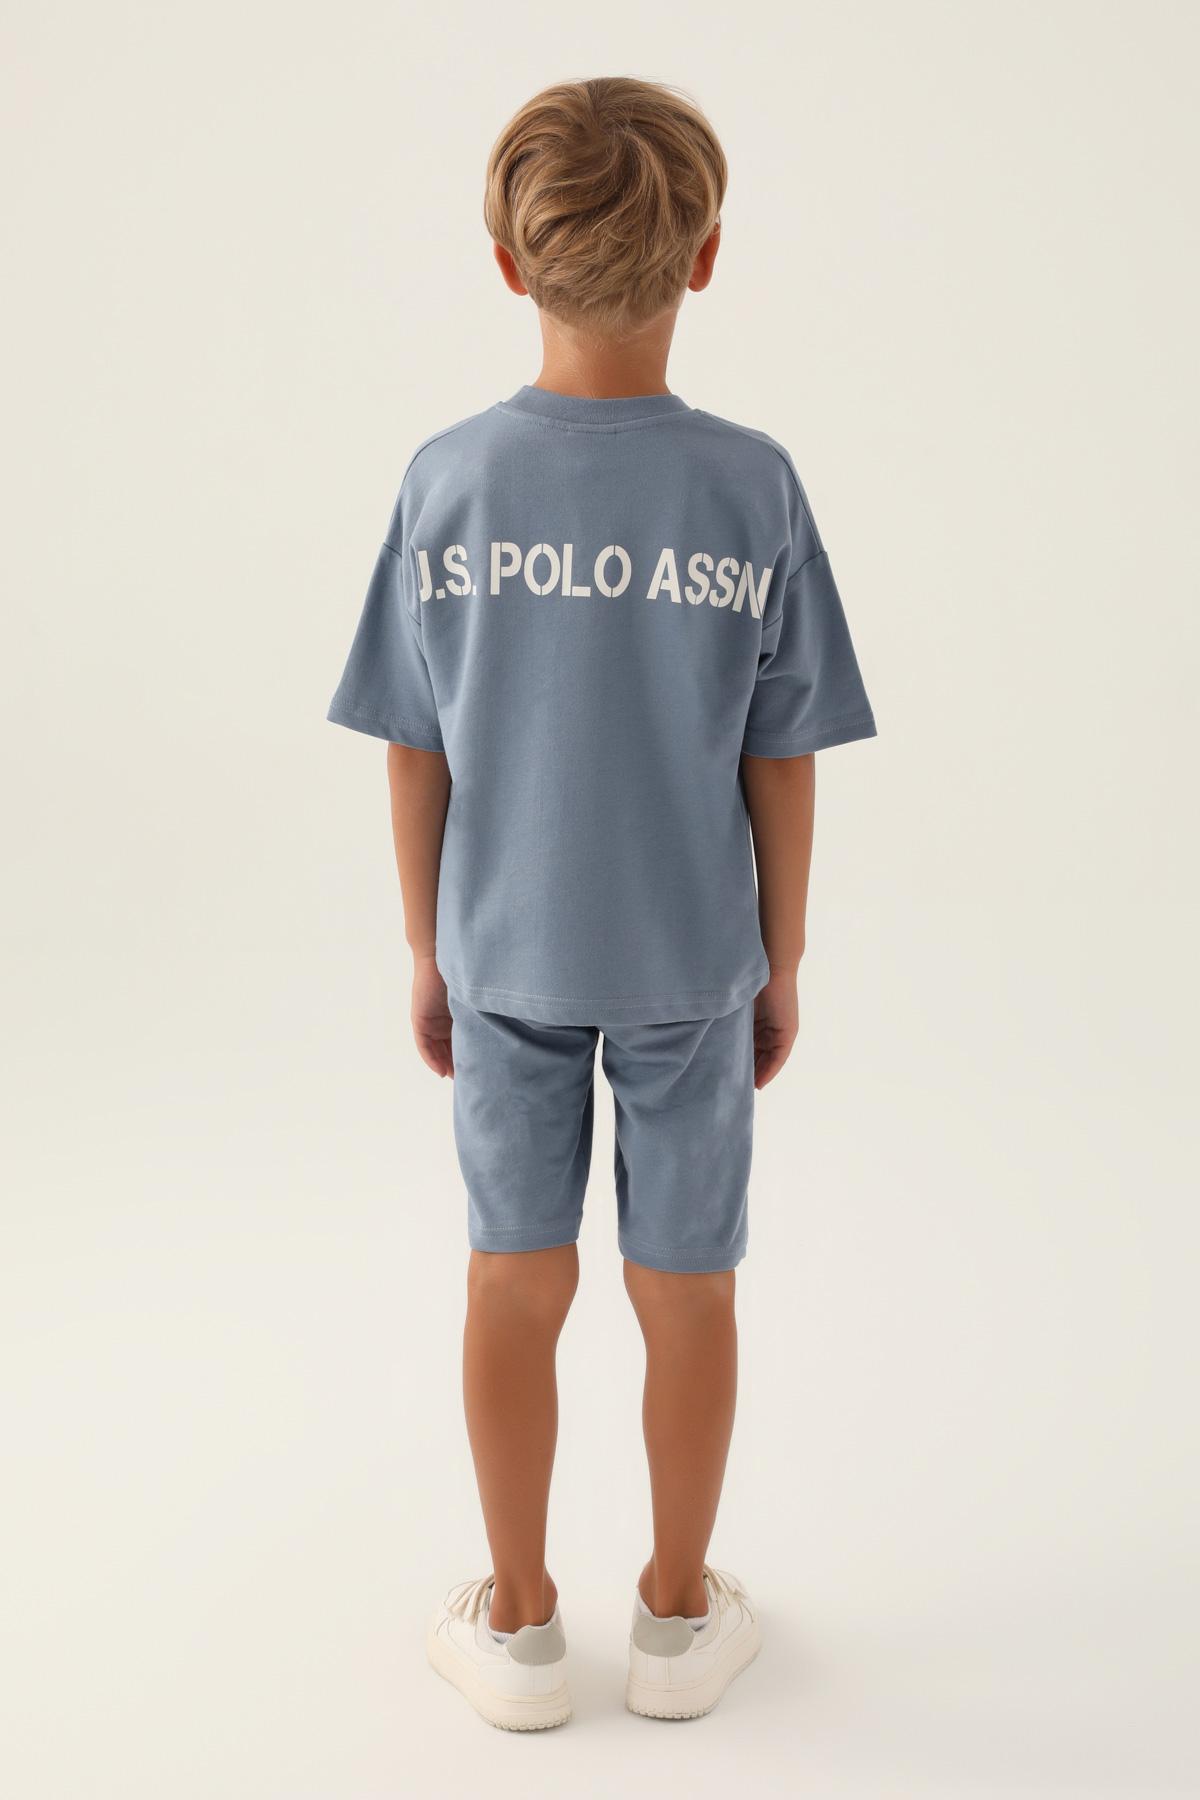 Selected image for U.S. Polo Assn. Komplet za dečake US1774-G, Svetloplavi